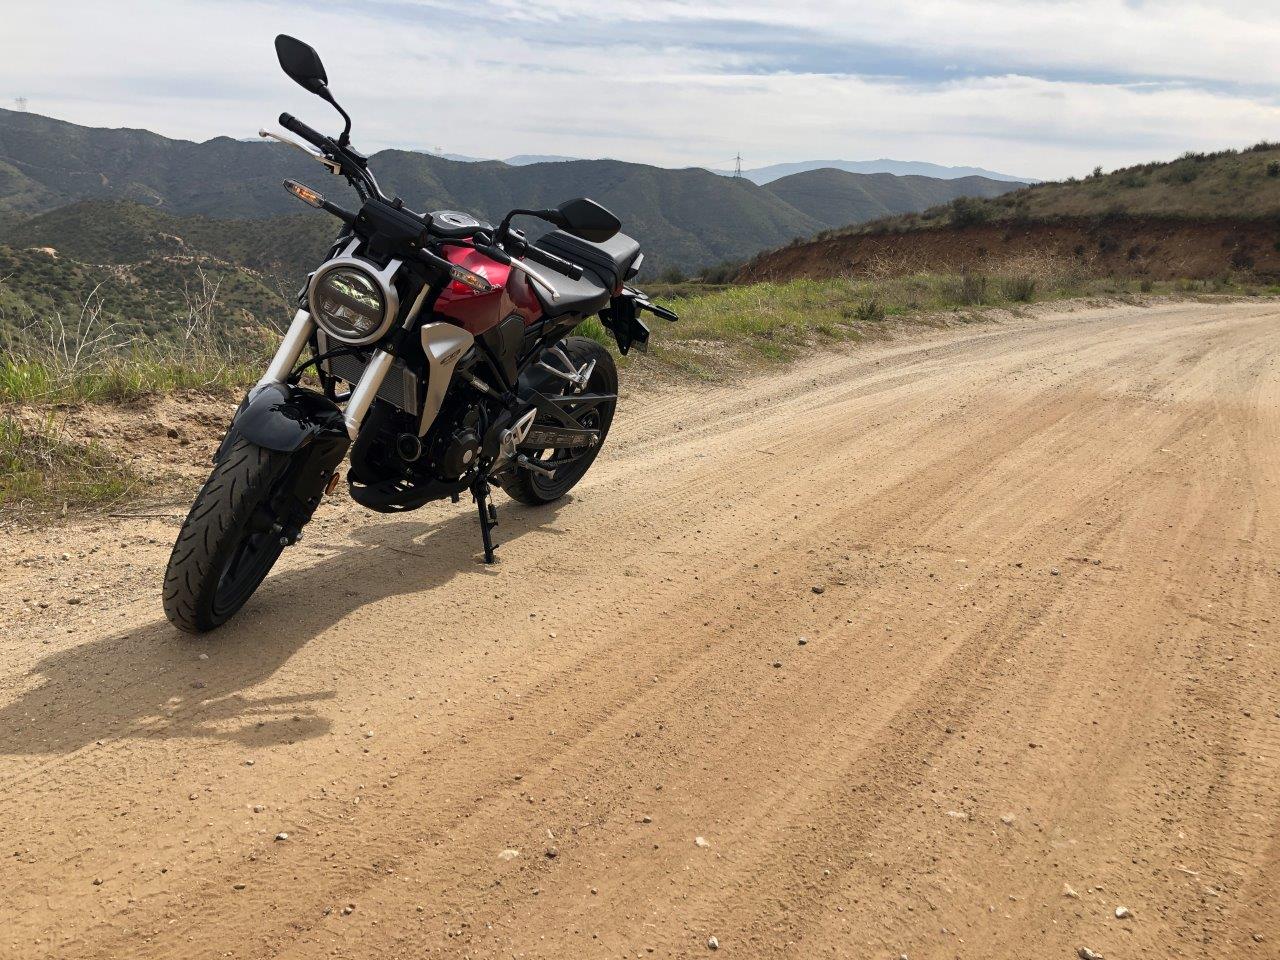 2019 Honda CB300R on dirt road.